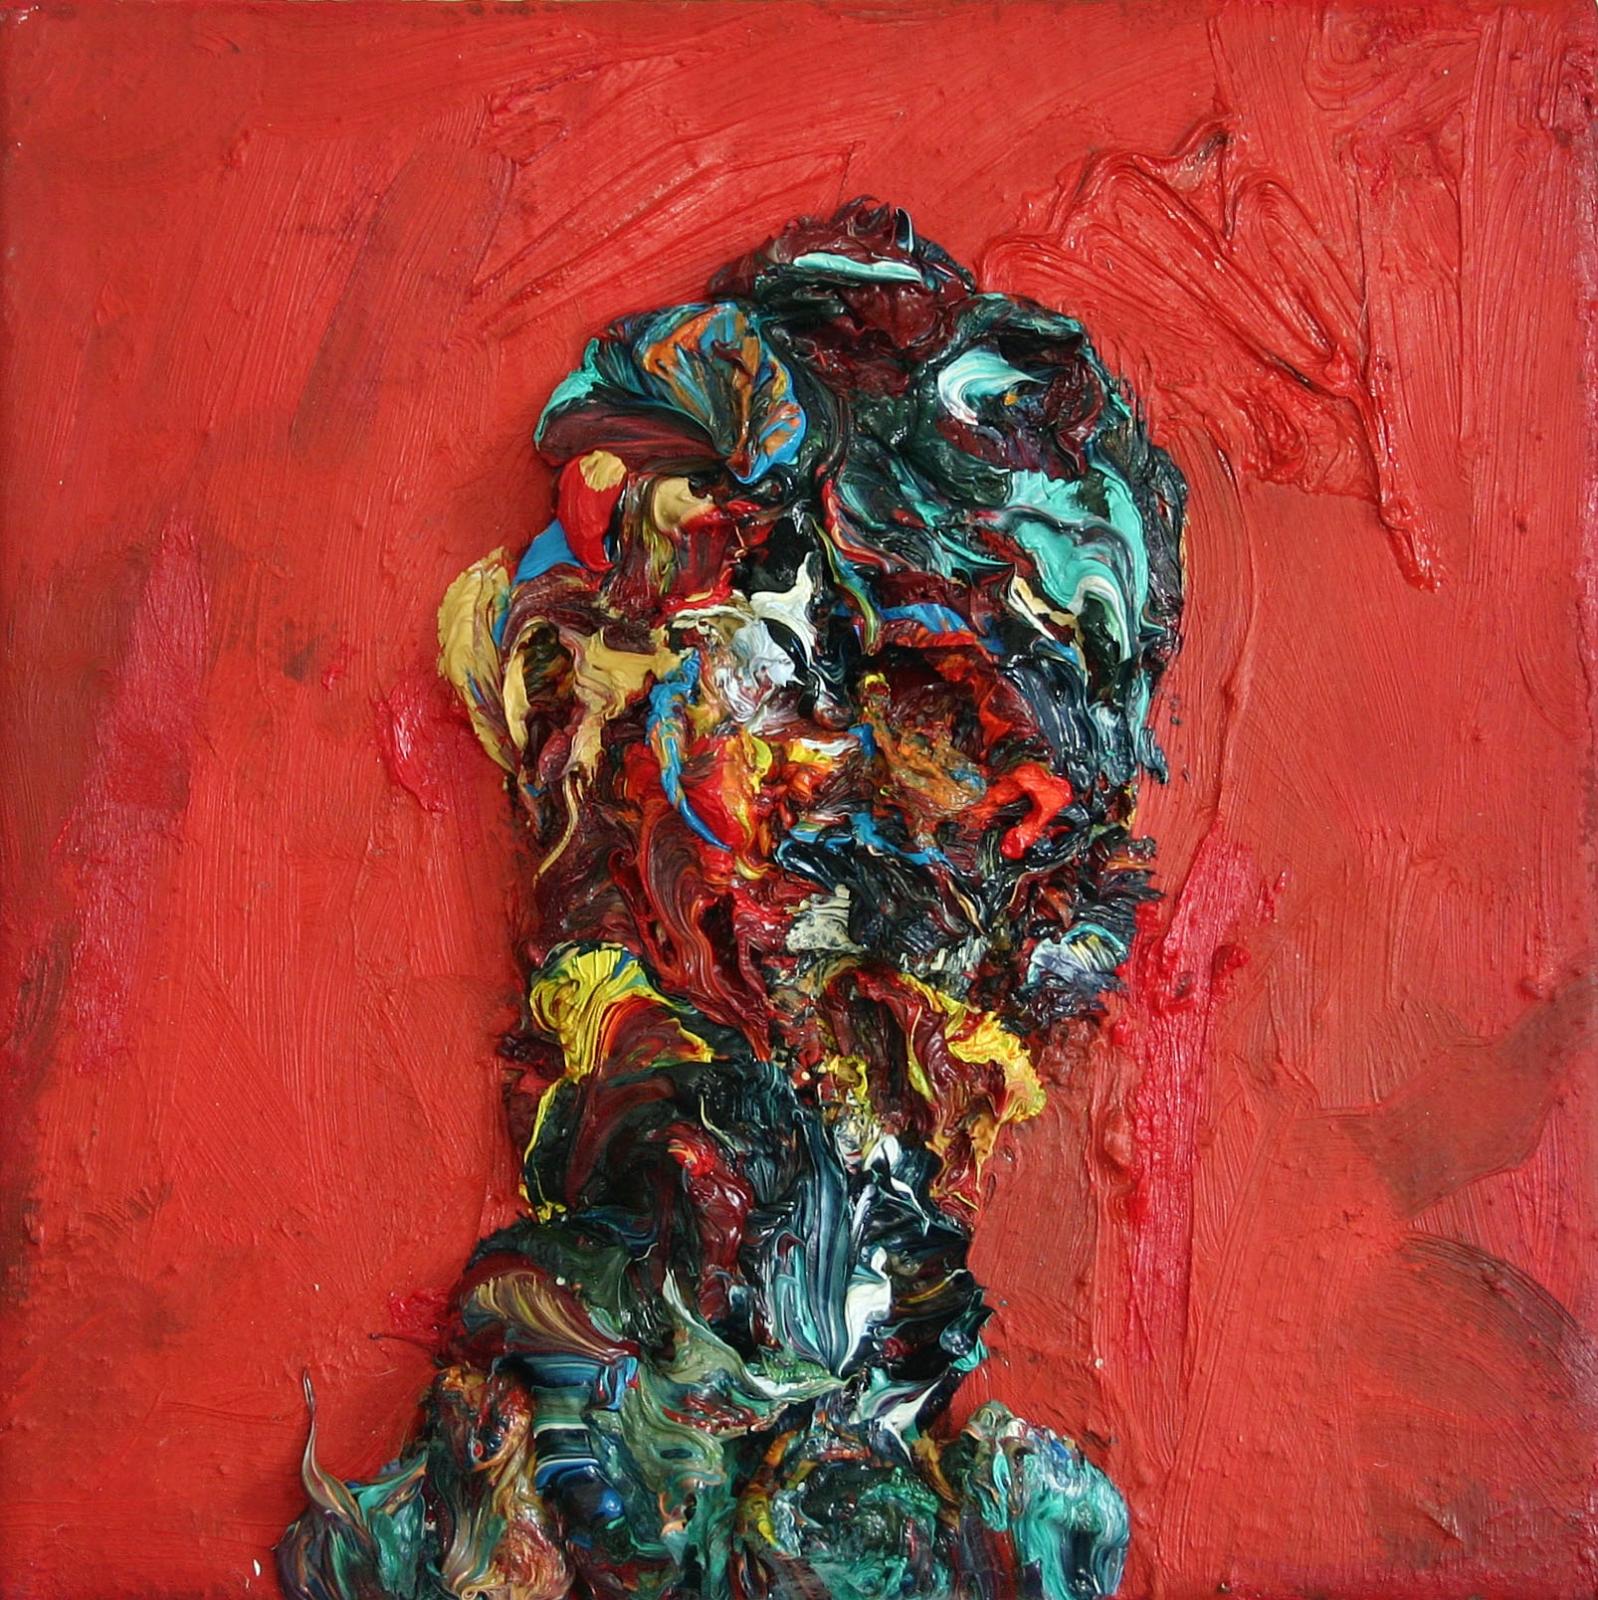 Harry Meyer, Kopf auf Leinwand, Öl auf Leinwand, 24 cm x 24 cm, Preis auf Anfrage, mey031kü